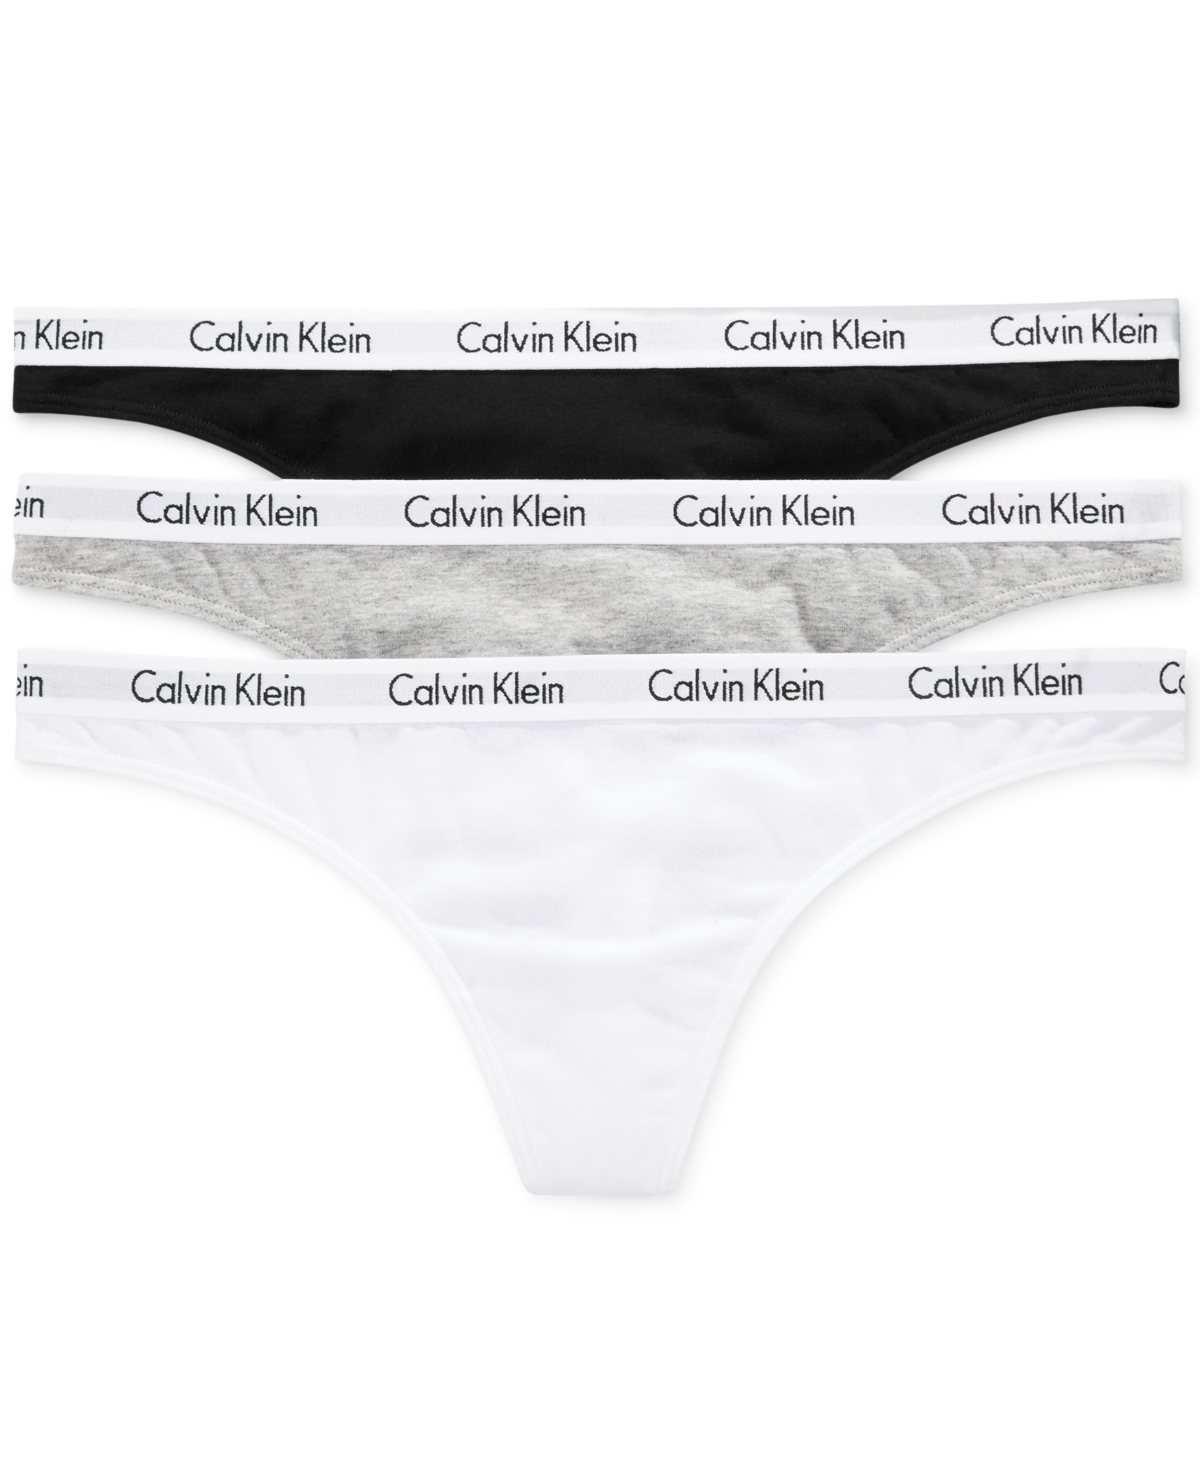 Calvin Klein Carousel Cotton 3-pack Thong Underwear Qd3587 In Black,white,grey Heather